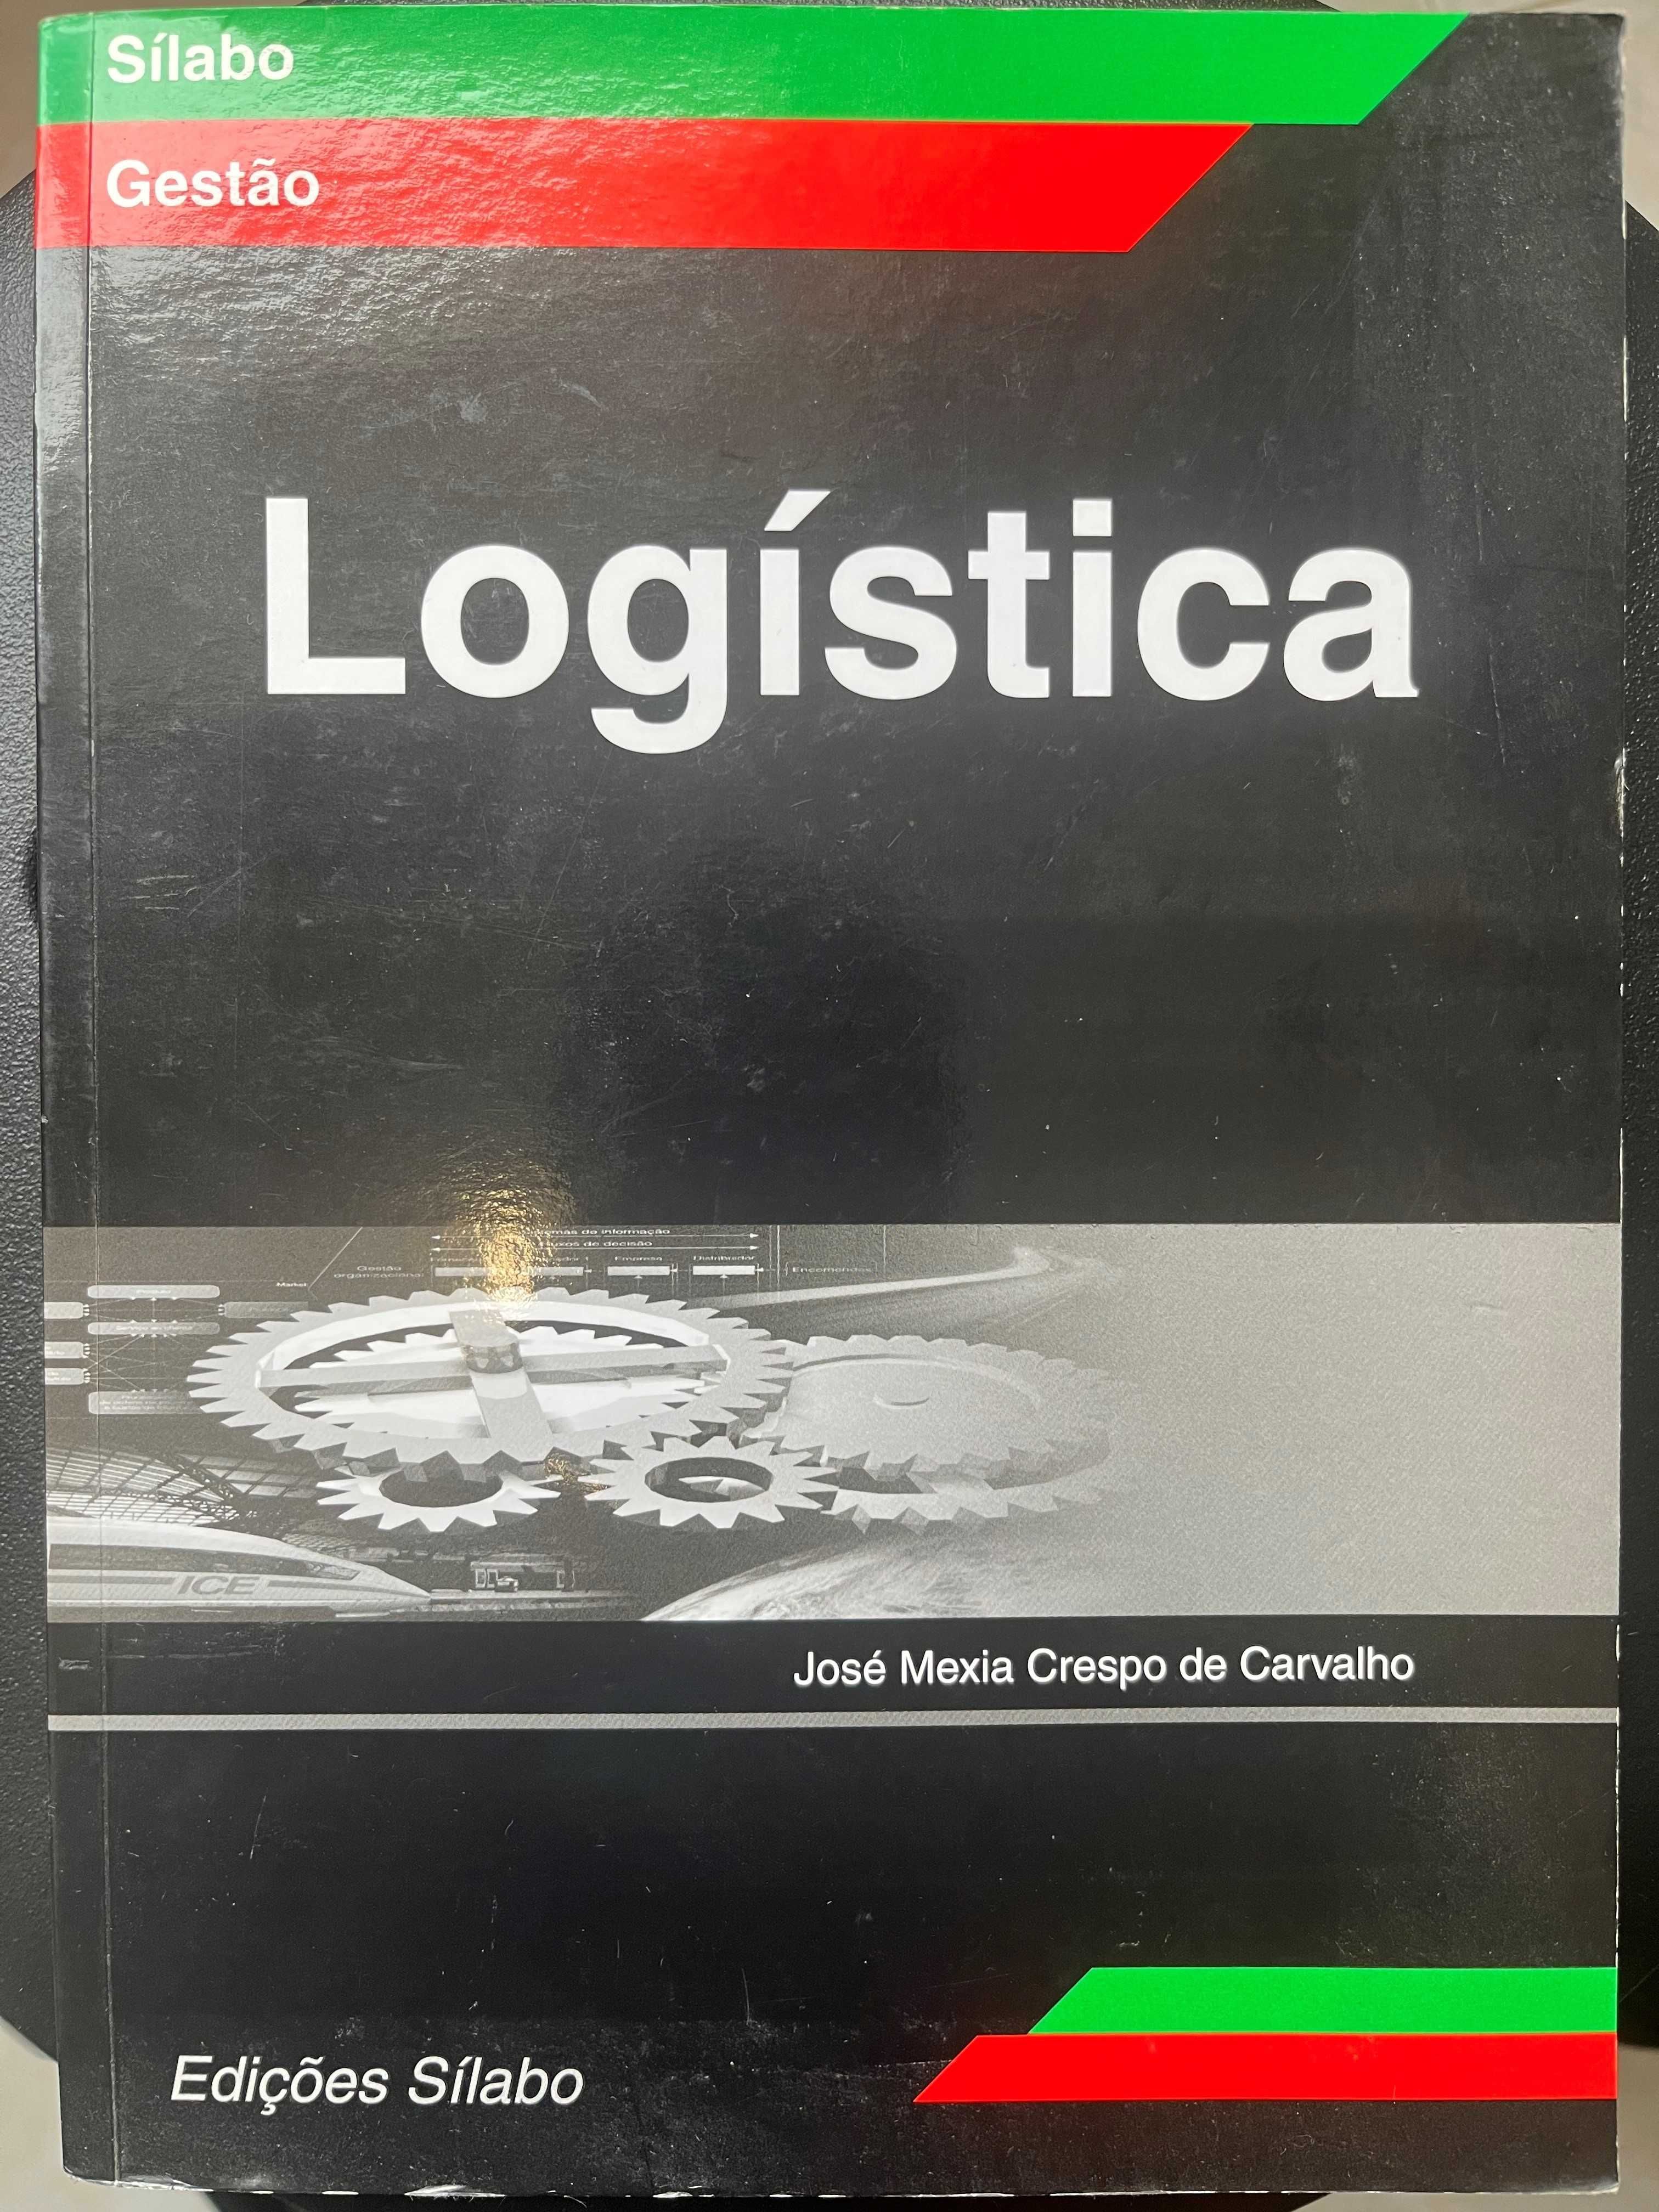 Logística, José Crespo de Carvalho